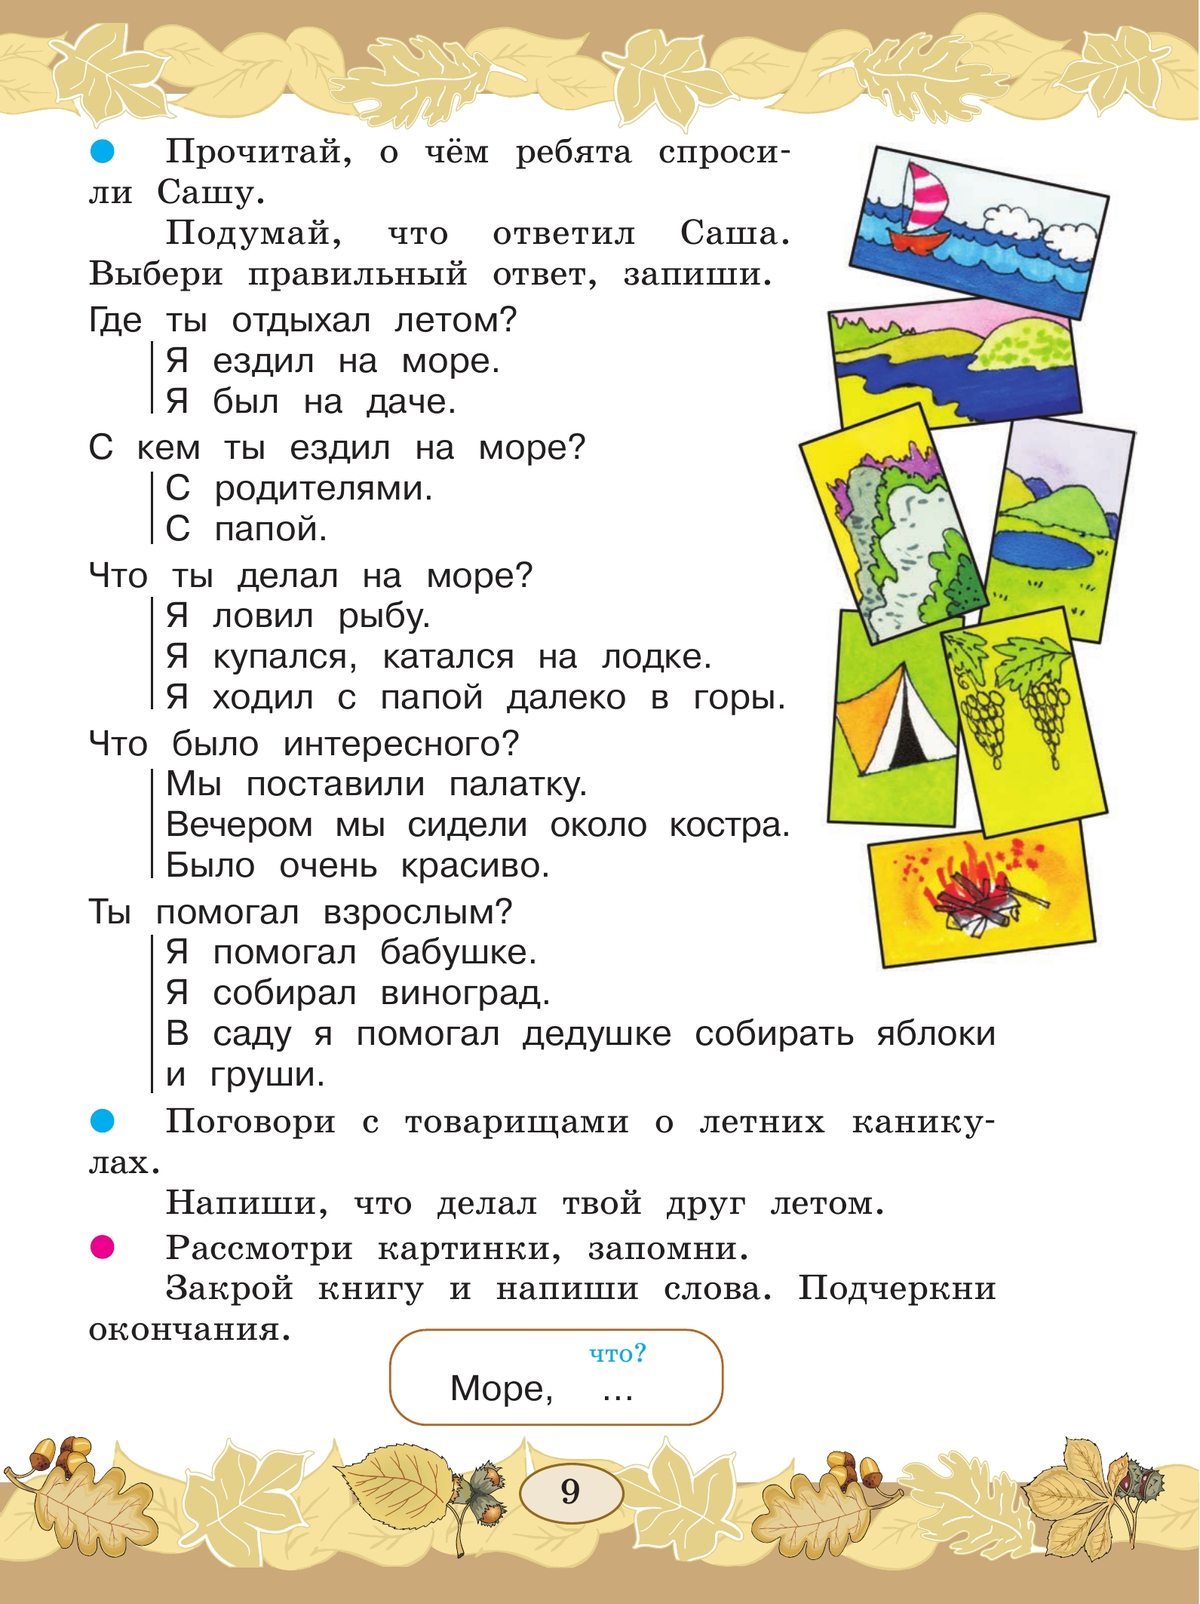 Русский язык. Развитие речи. 3 класс. Учебник. В 2 ч. Часть 1 (для глухих обучающихся) 5